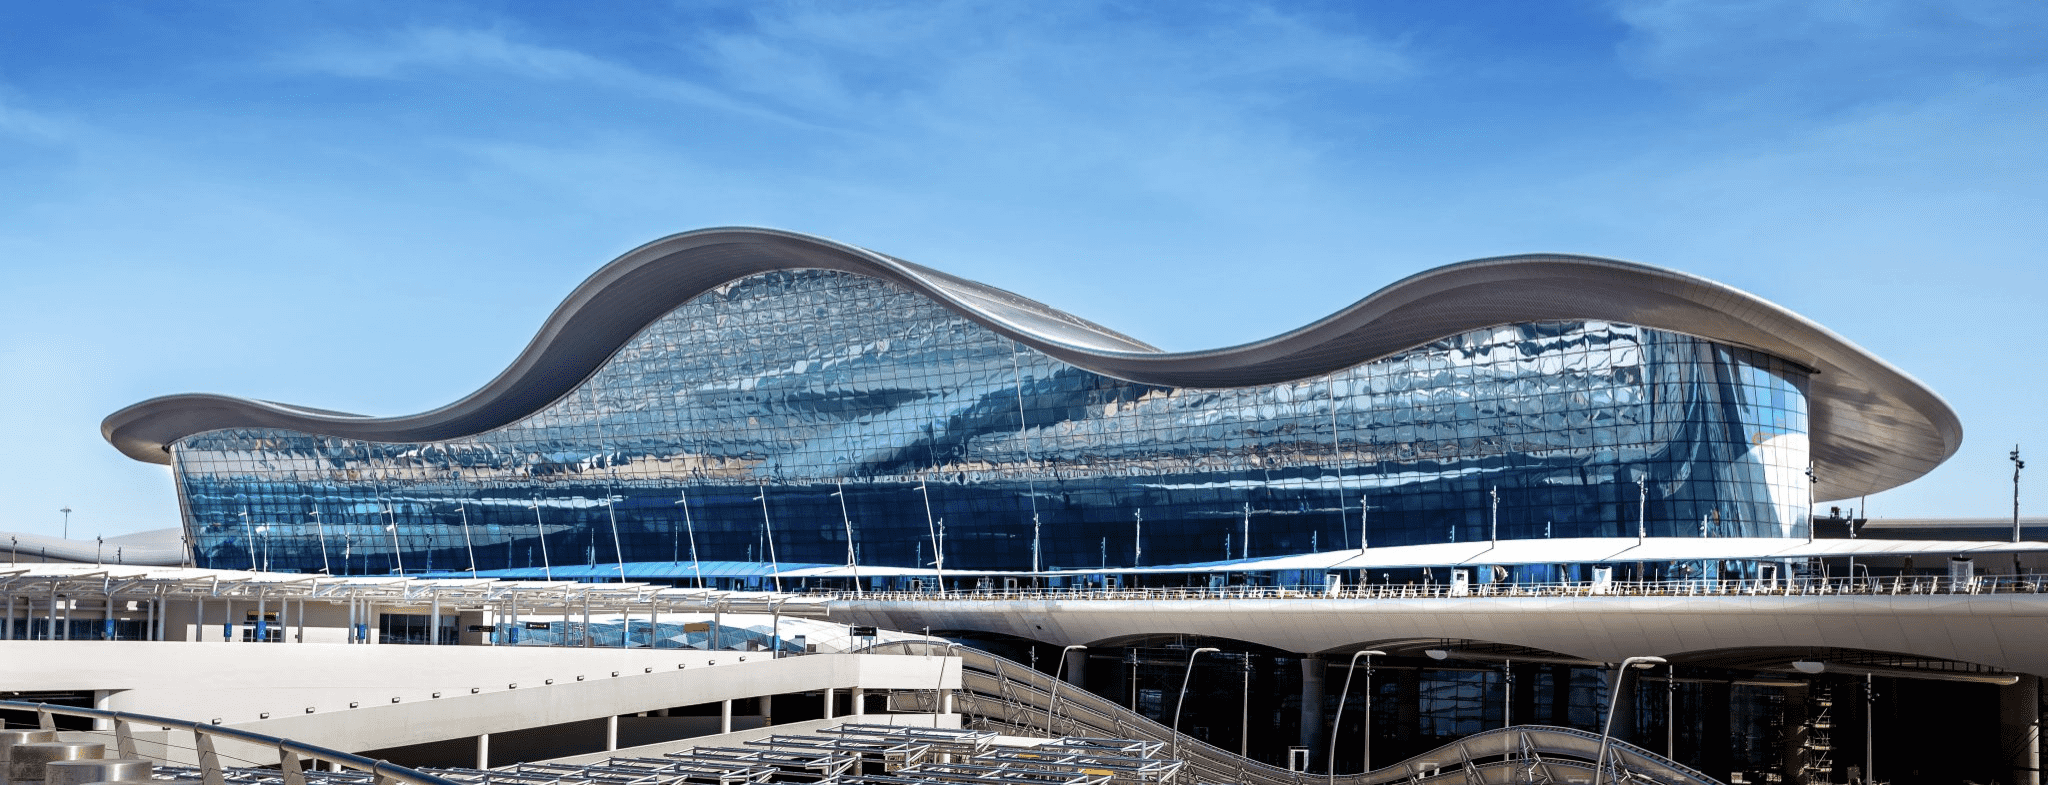 Abu Dhabi Airport Terminal A